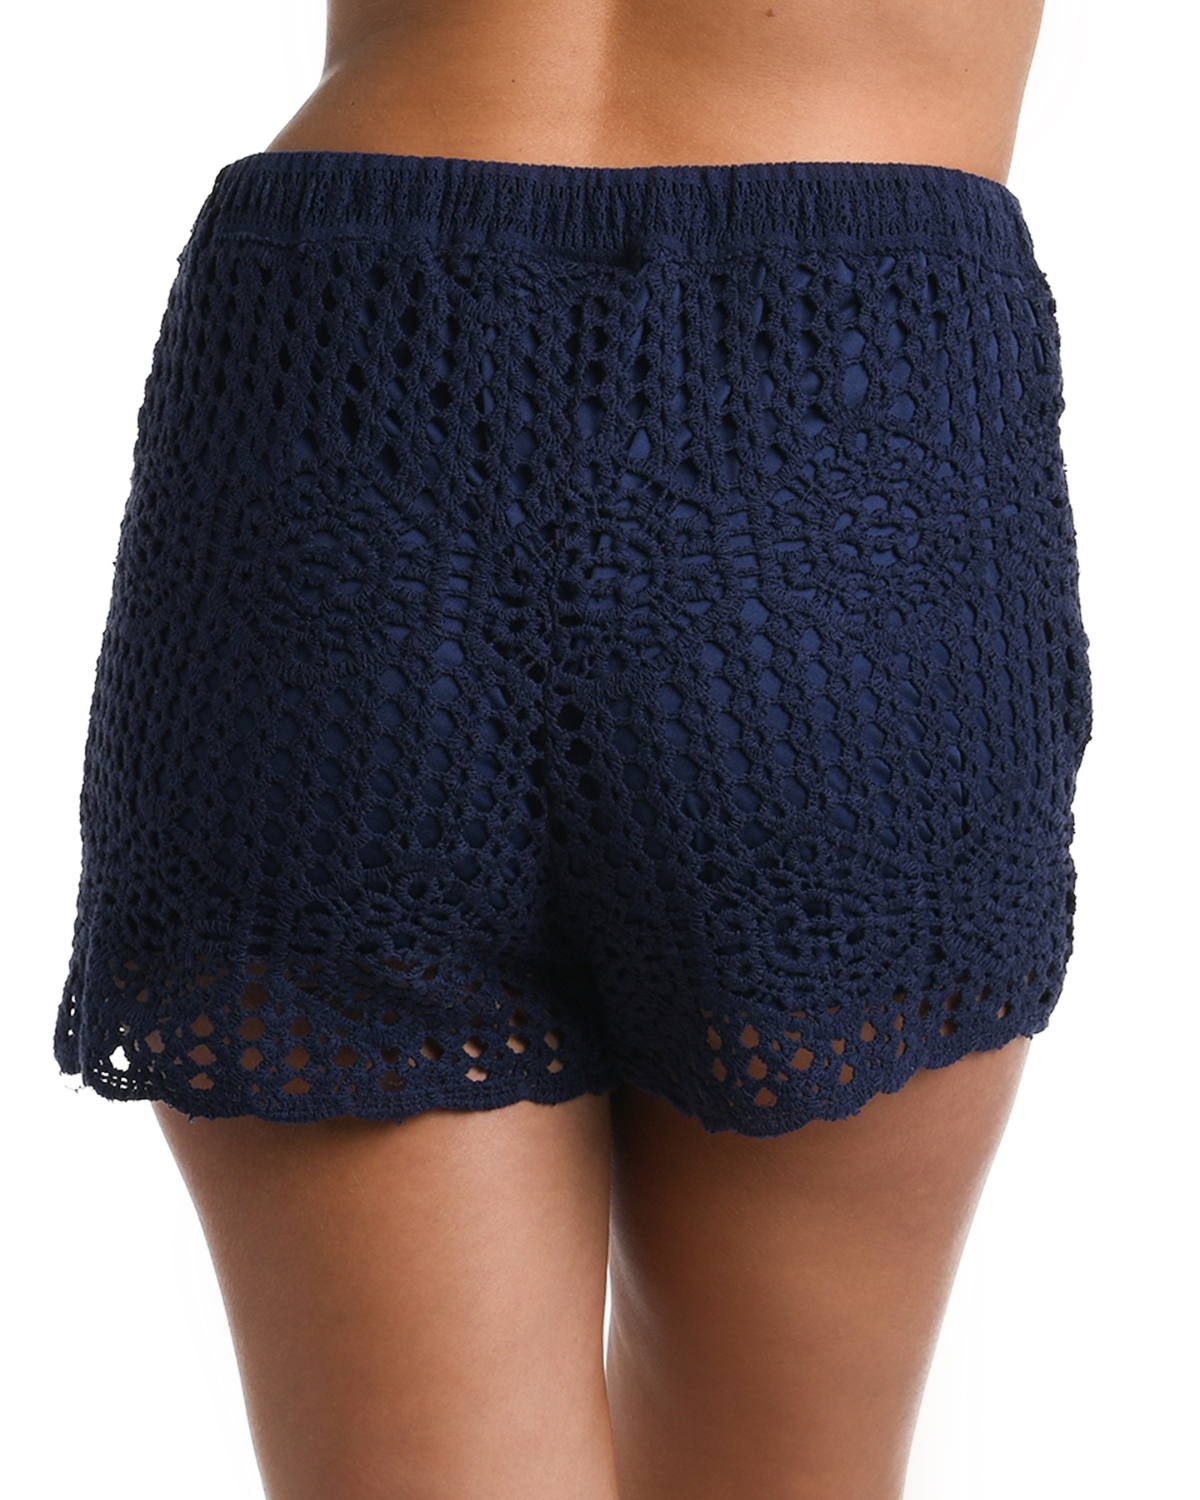 Model wearing a crochet short in indigo